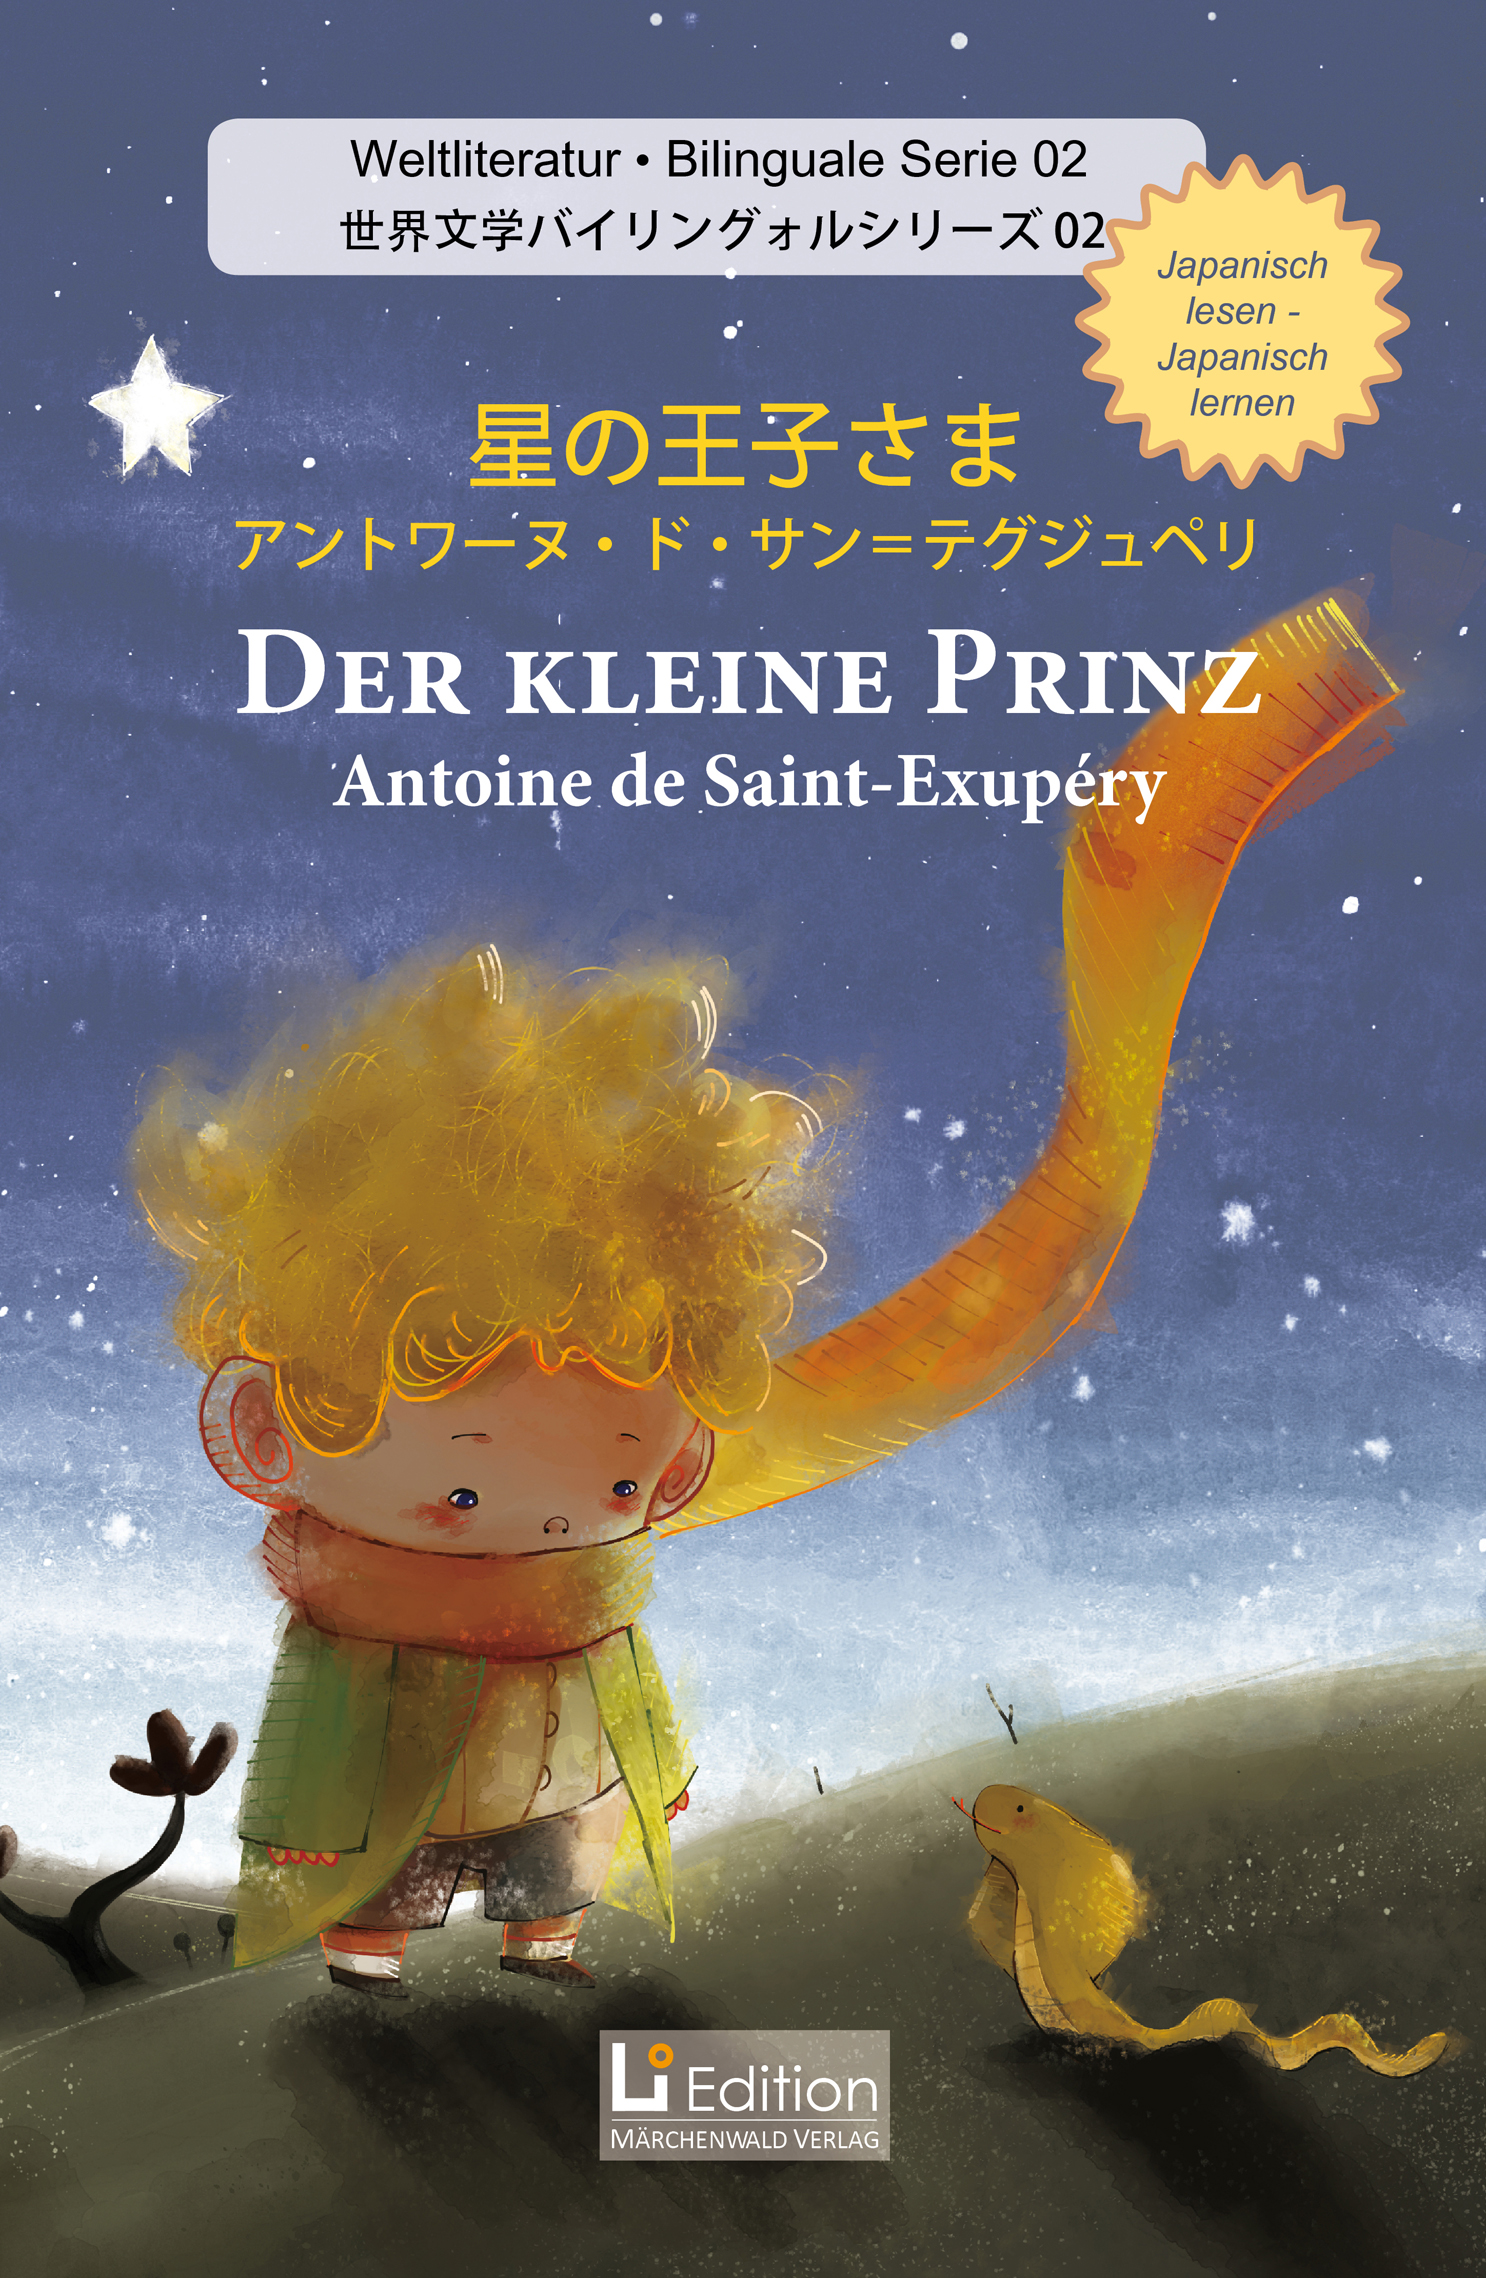 Der kleine Prinz - bilingual (Japanisch/Deutsch)